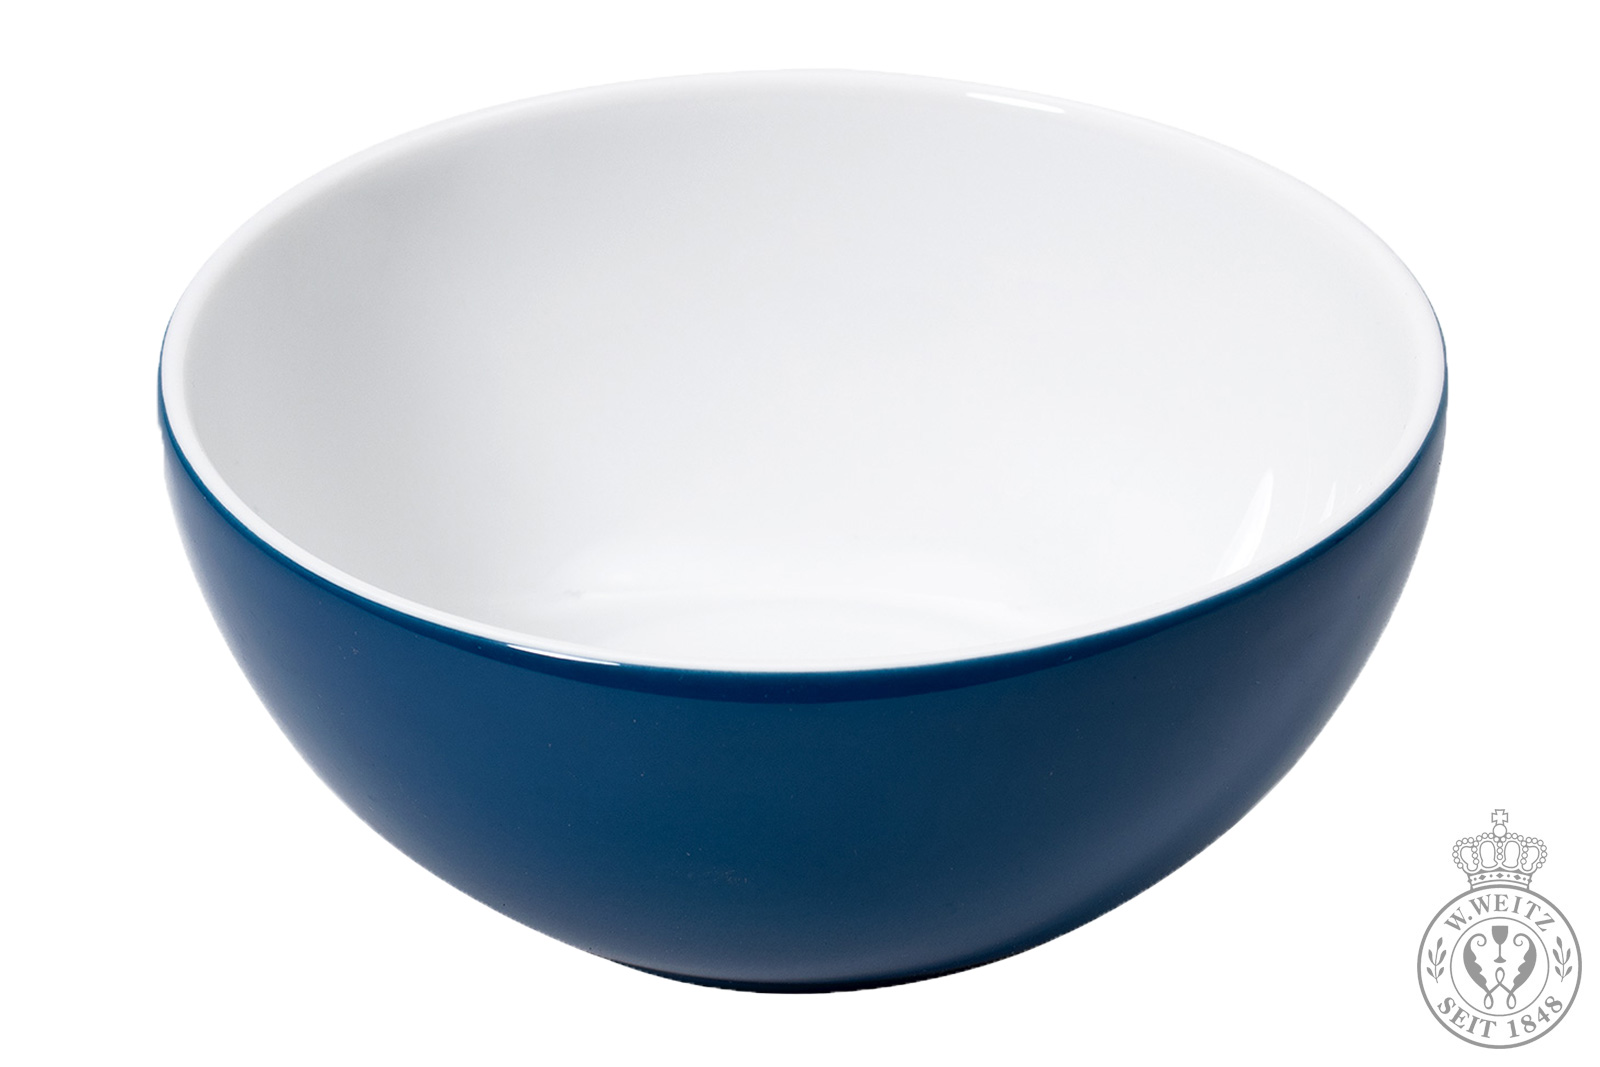 Dibbern Solid Color pazifikblau Schale 1,25ltr. 20cm